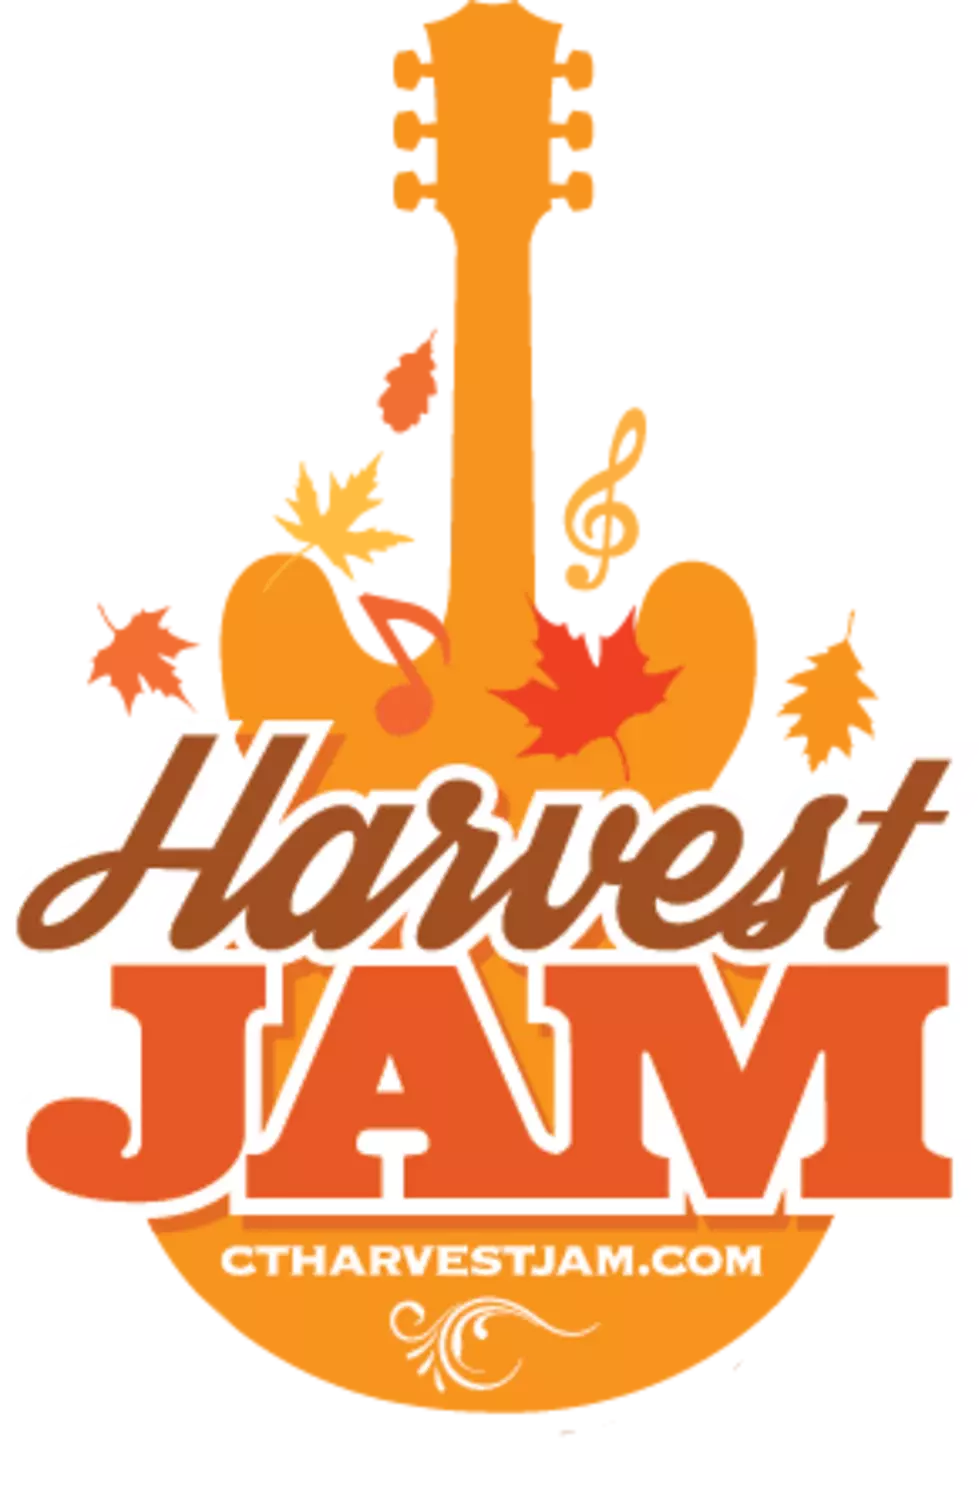 Harvest Jam is This Saturday in Danbury